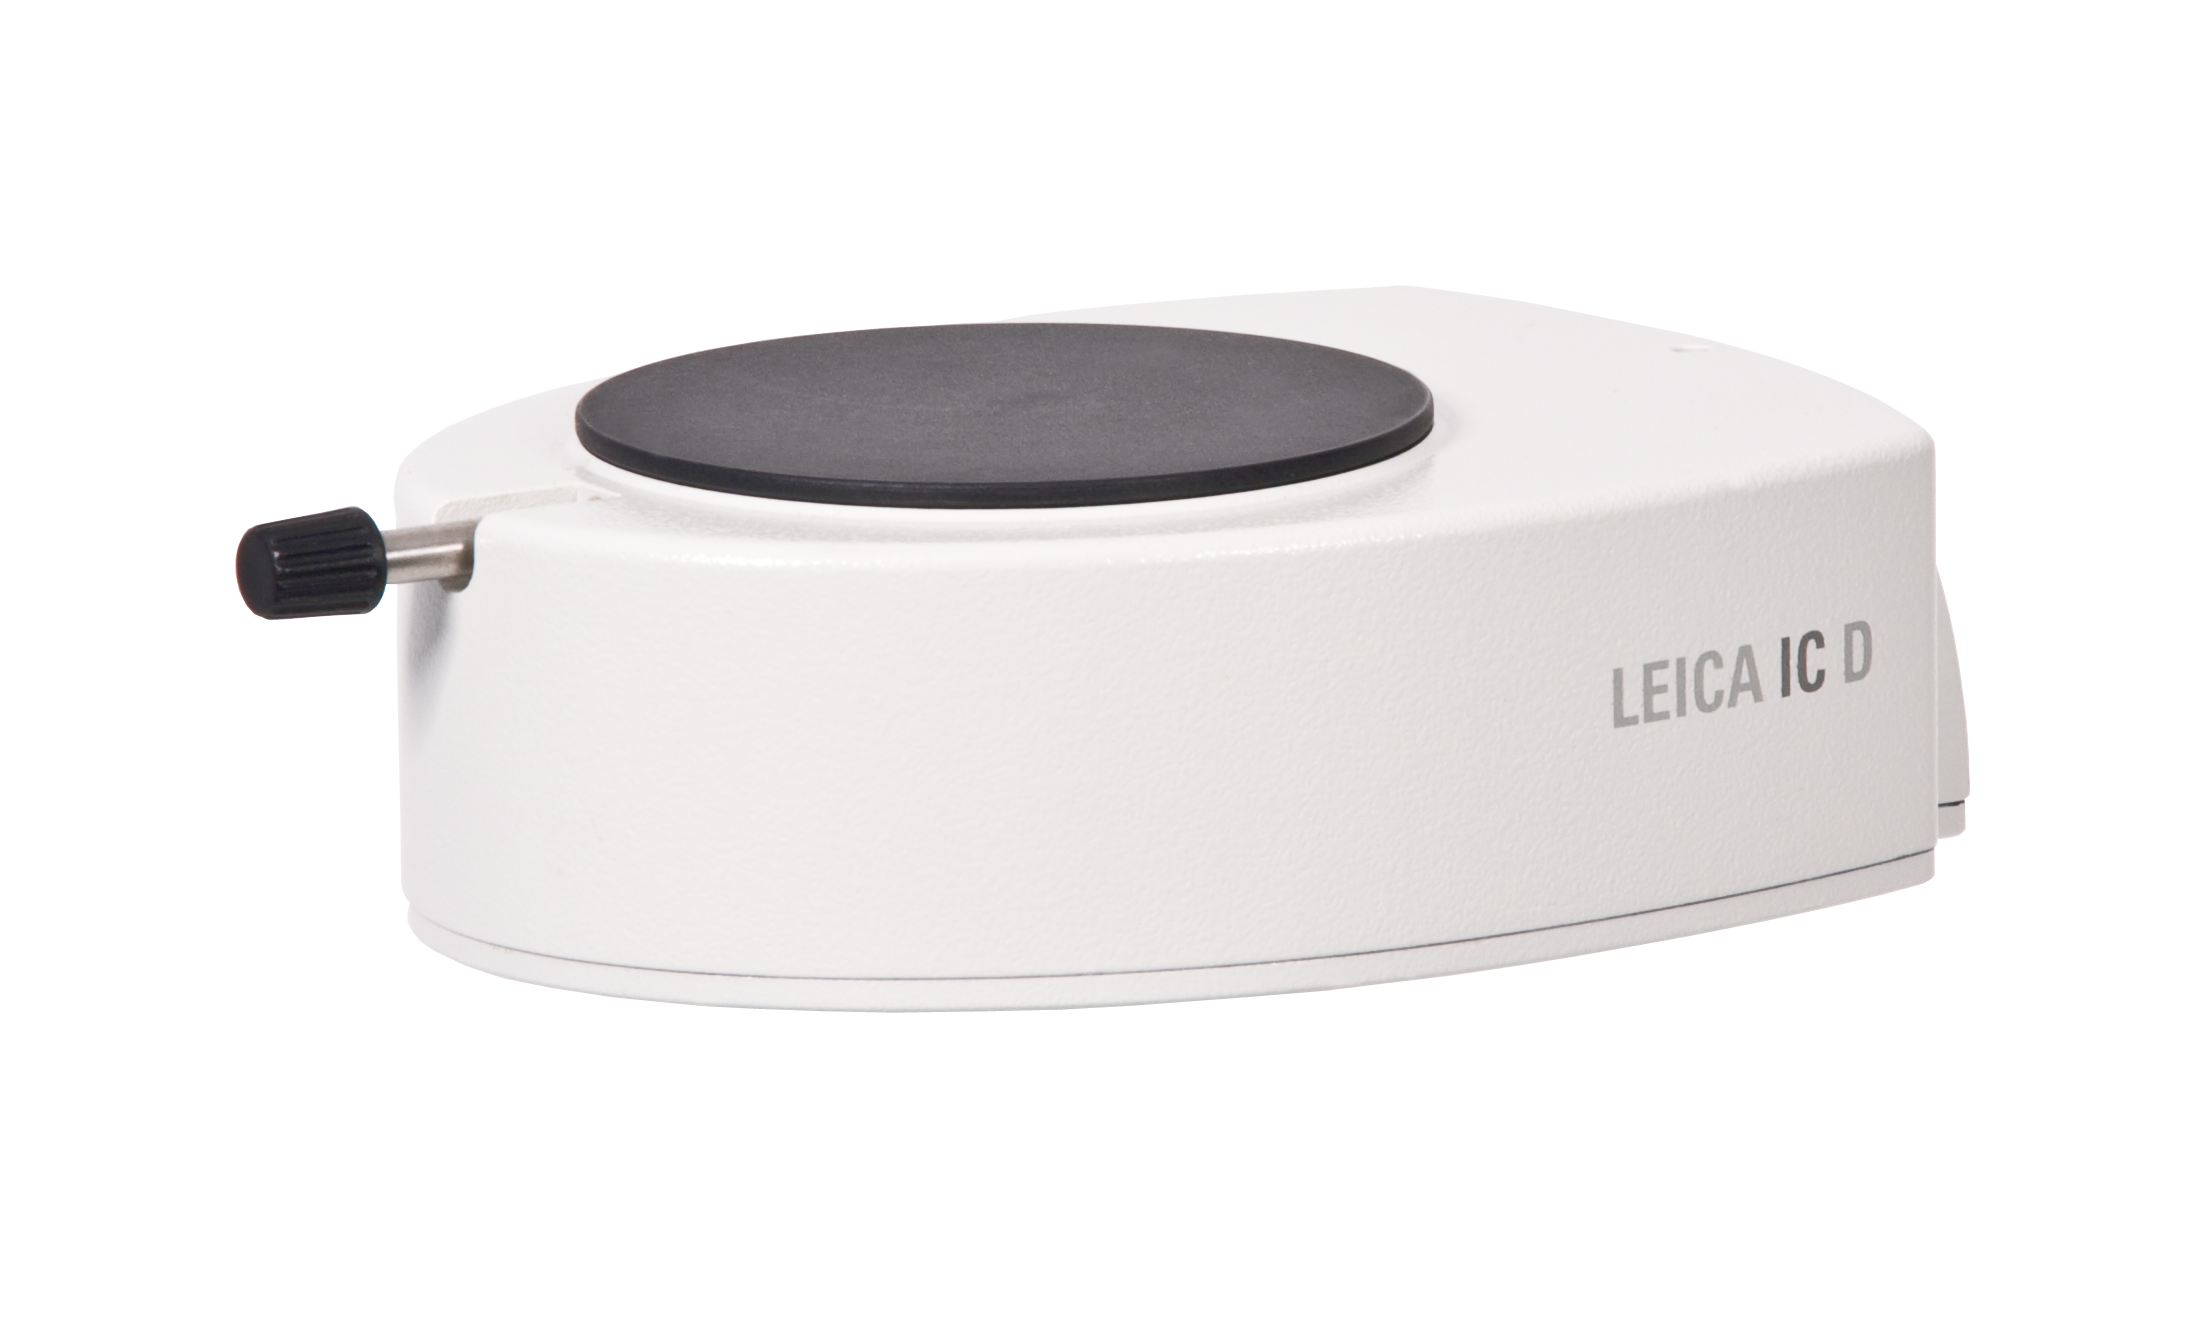 Leica IC D - eine leistungsfähige und kostengünstige Mikroskopkamera